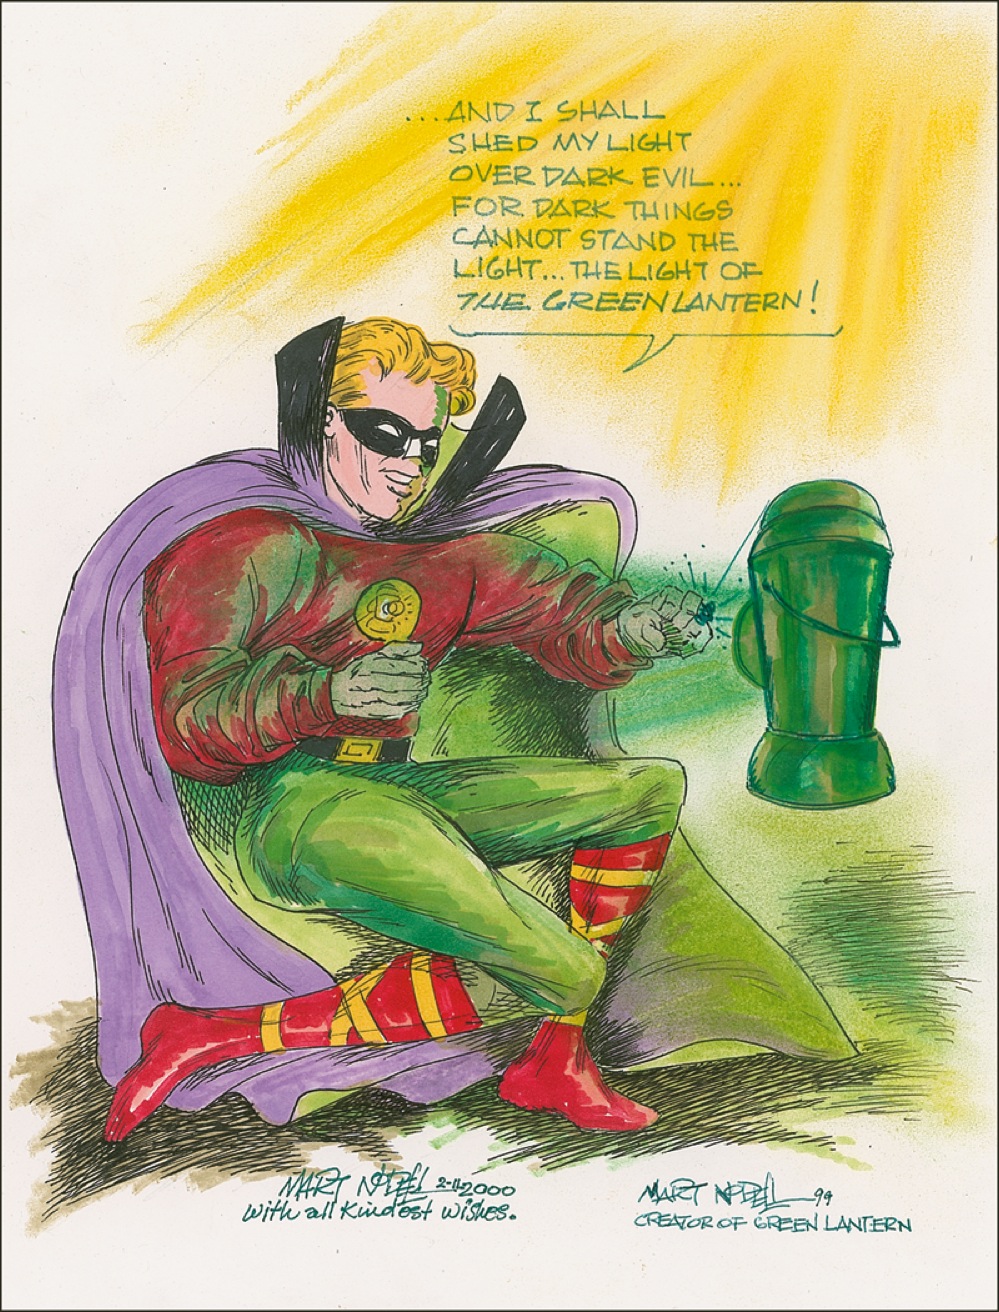 Lot #568 Green Lantern: Martin Nodell